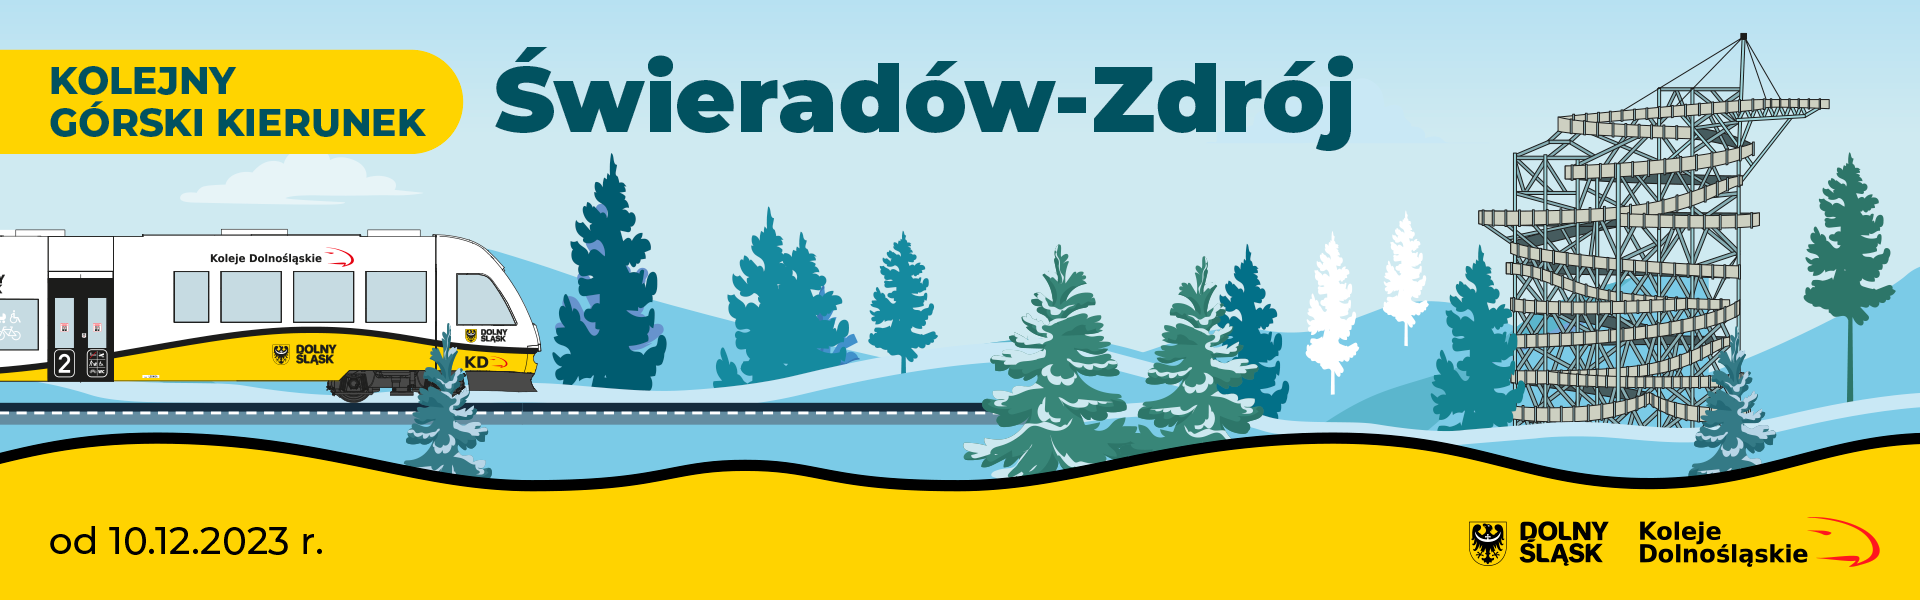 Banner - Kolejny górski kierunek - Świeradów-Zdrój